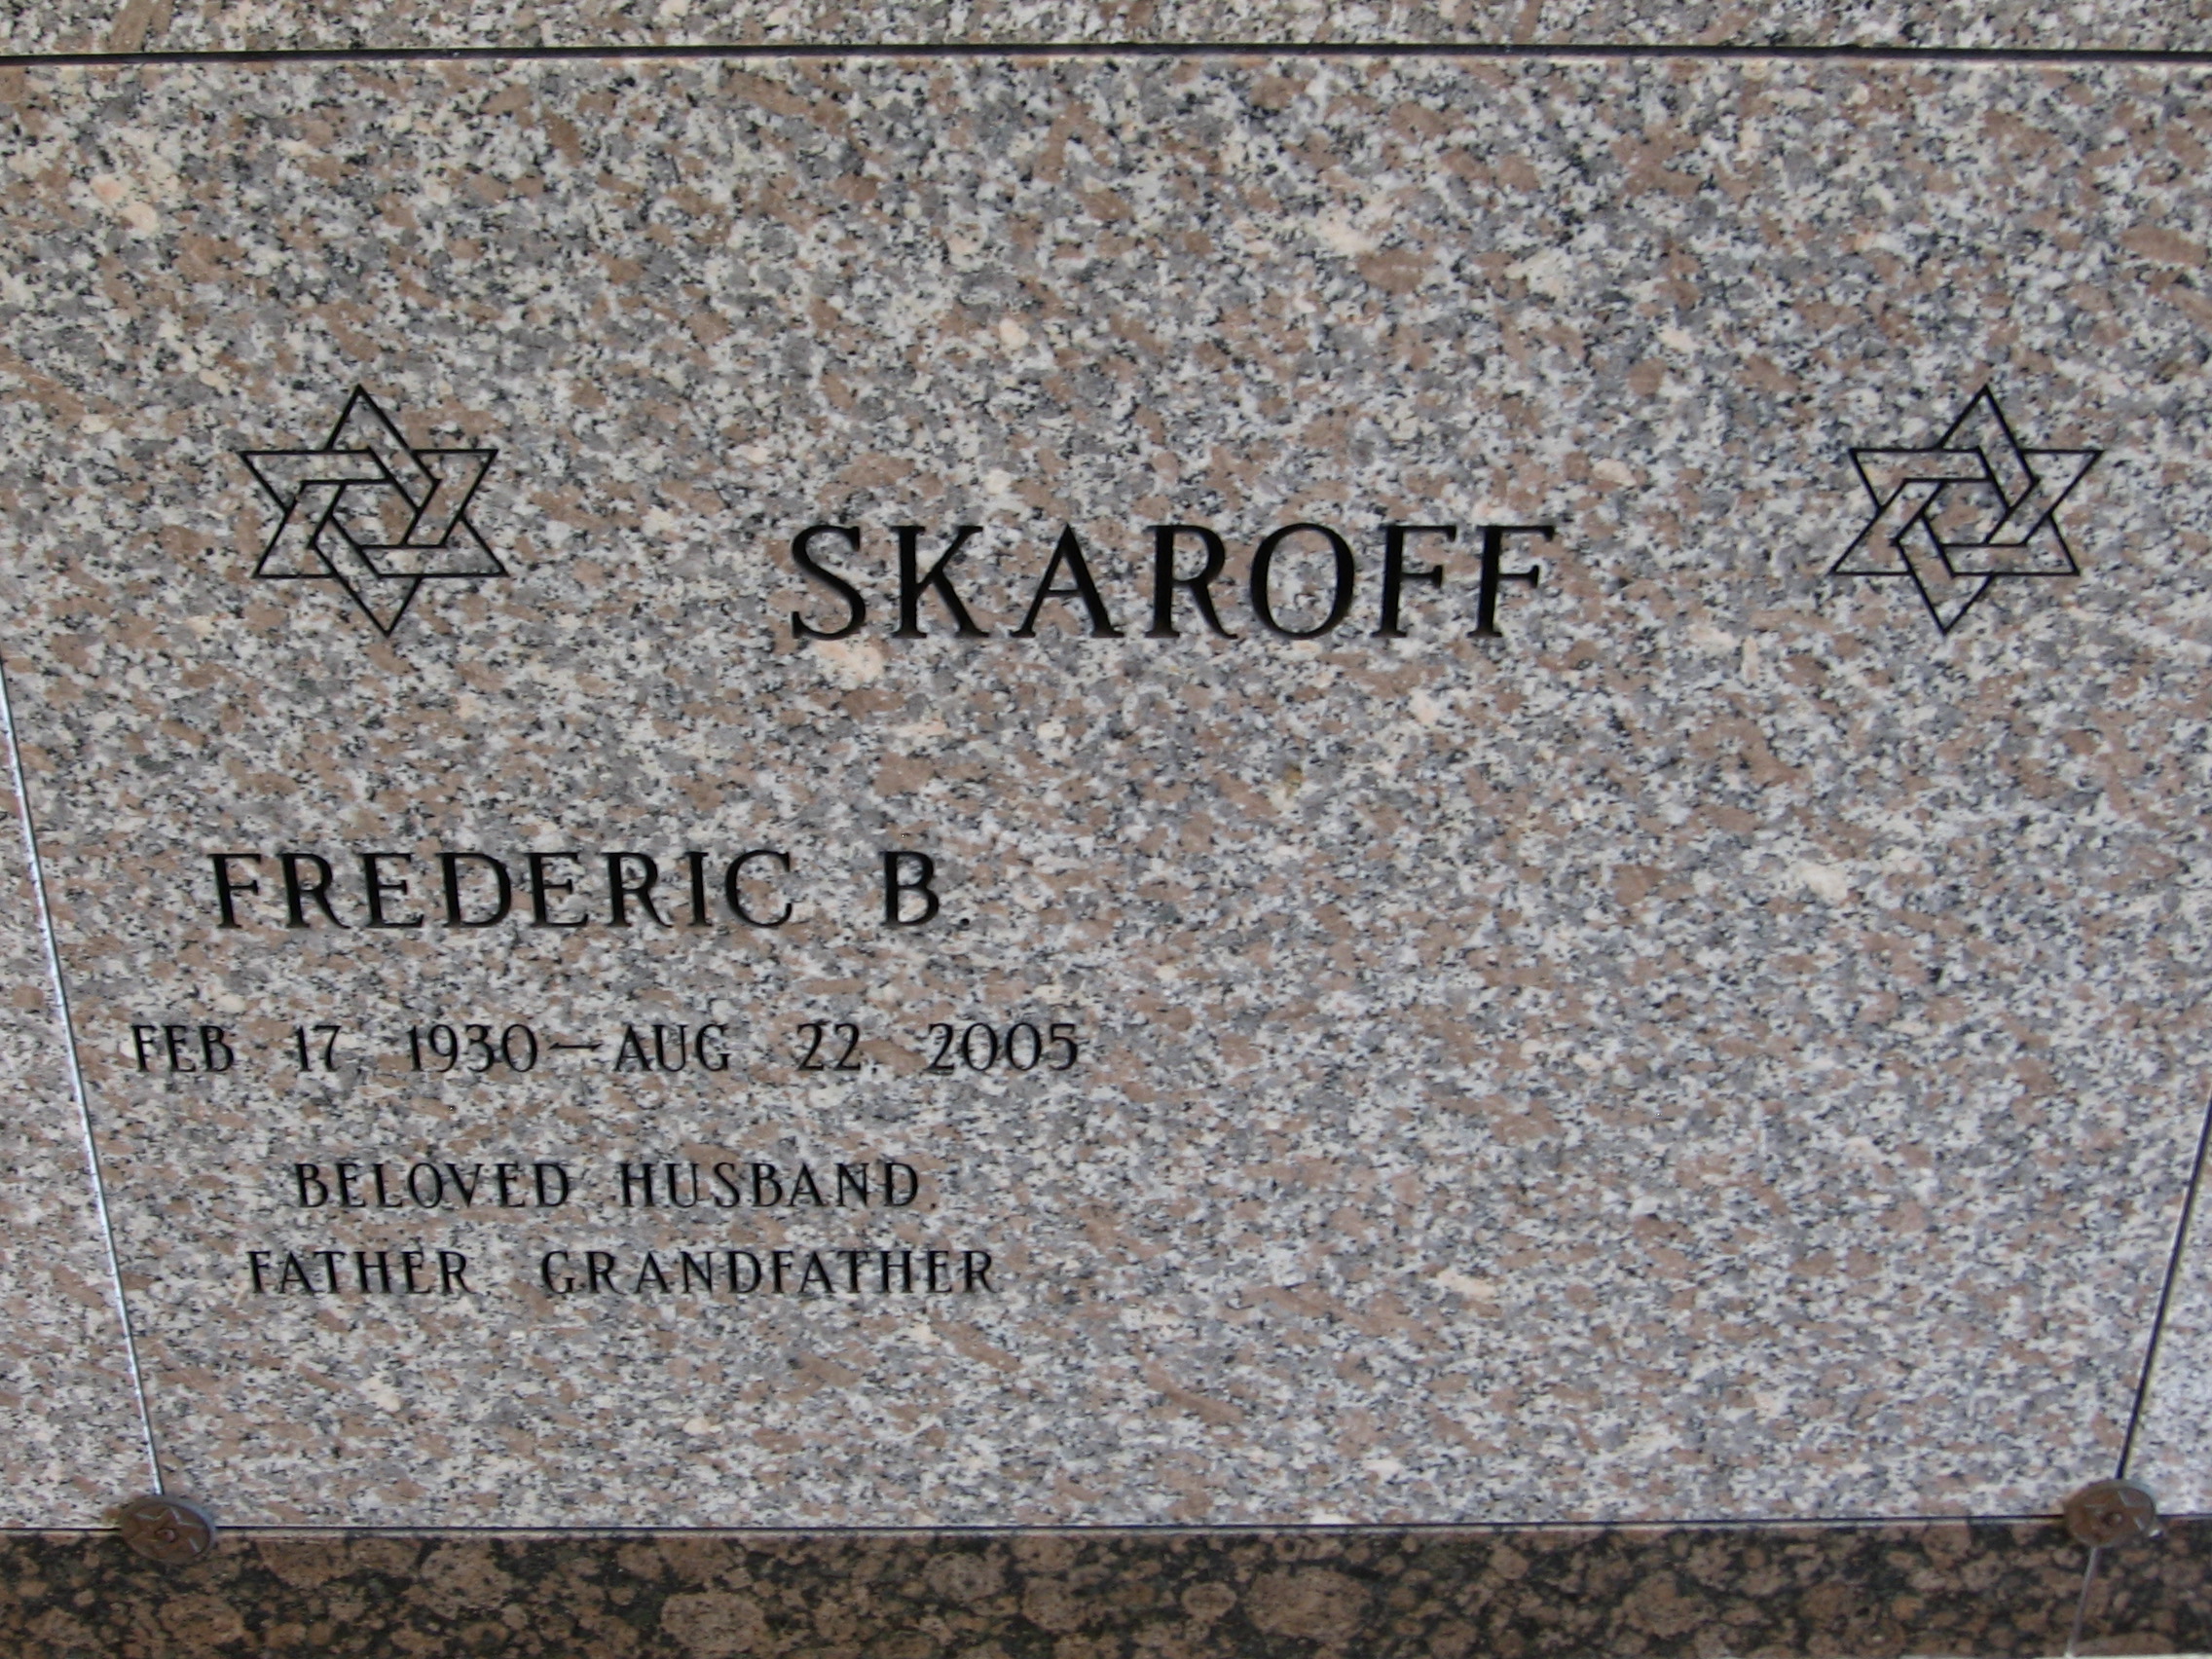 Frederic B Skafoff